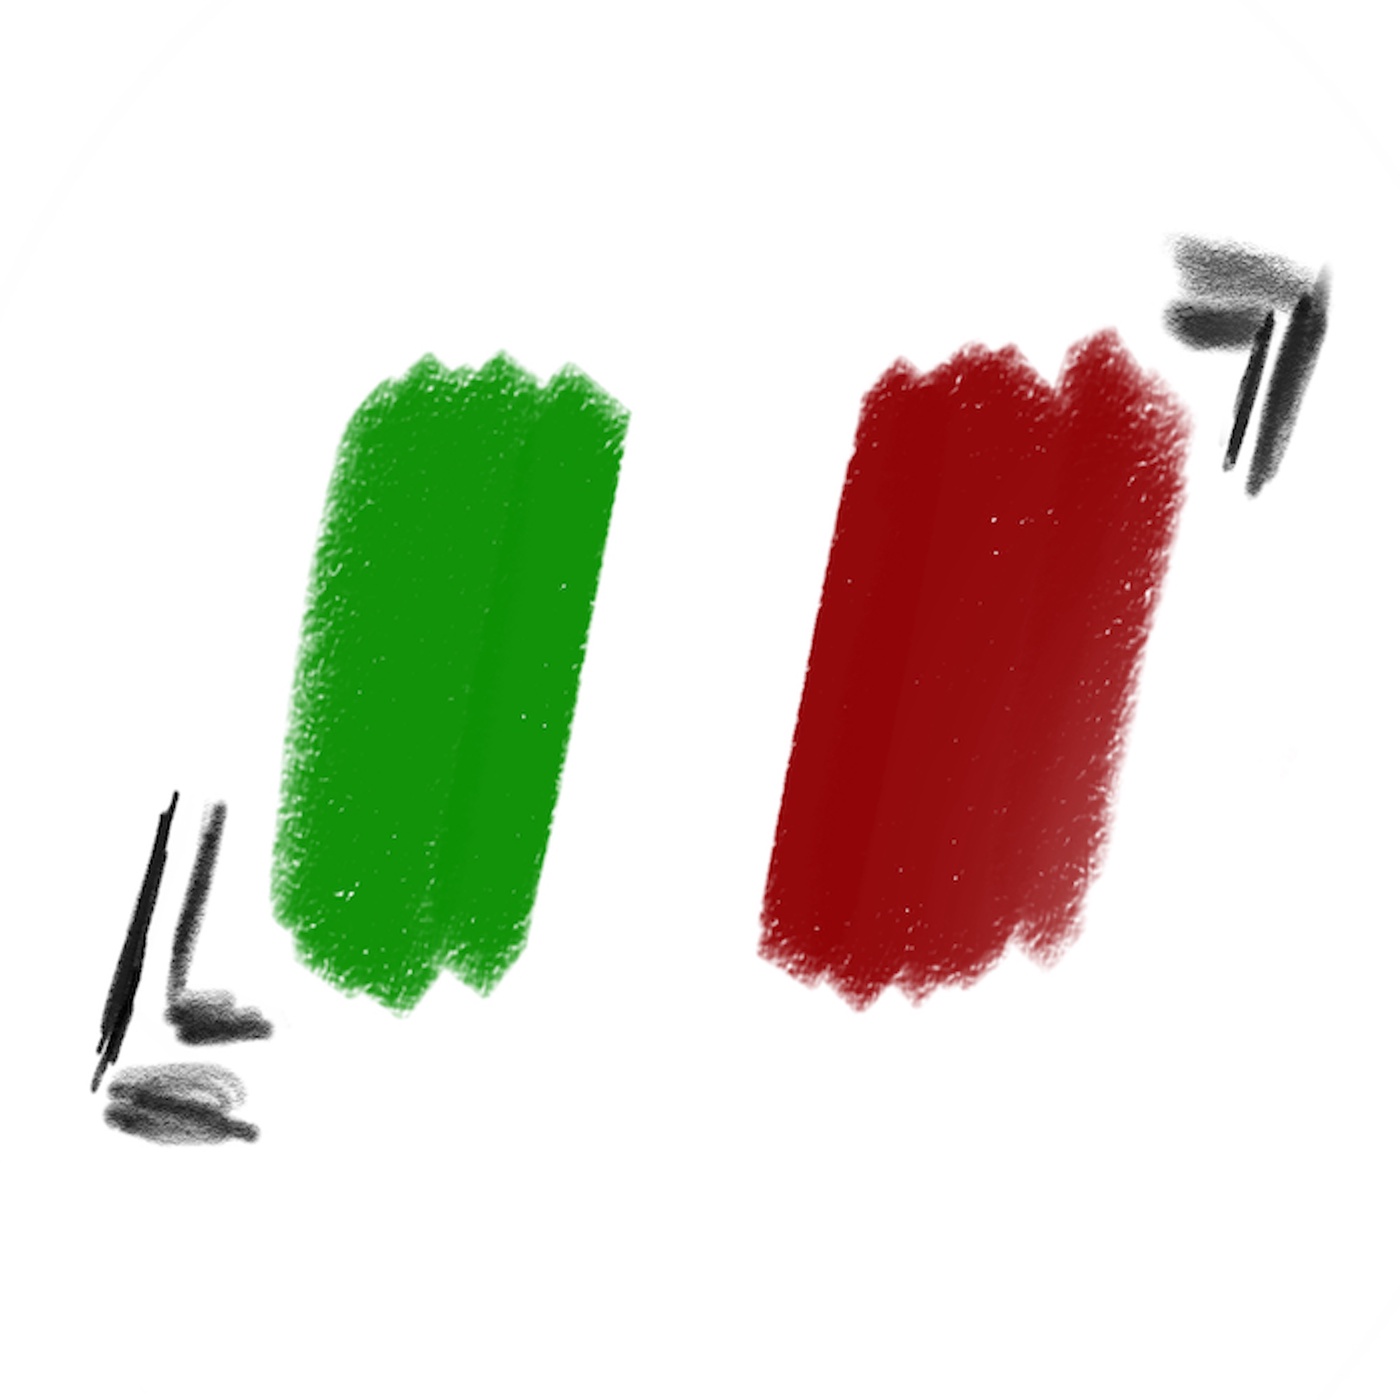 Belpaese: Woher Italien-Klischees kommen und was sie bewirken